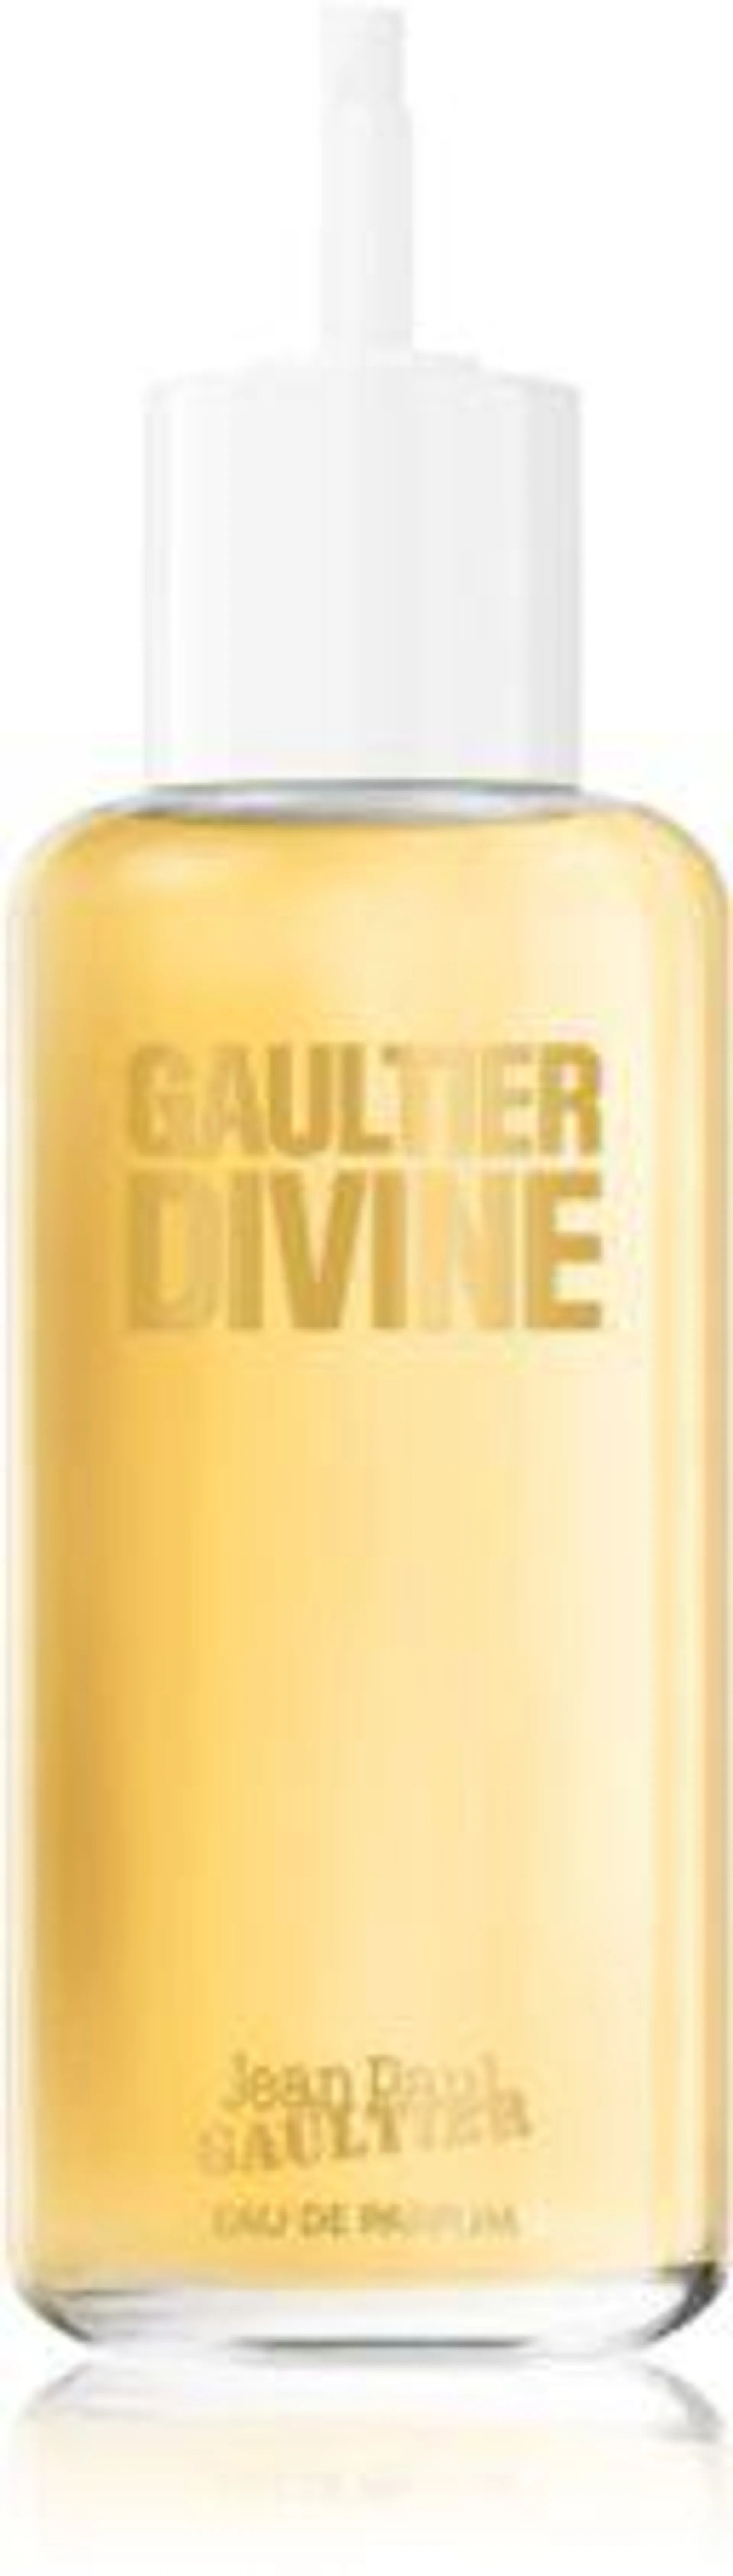 Gaultier Divine